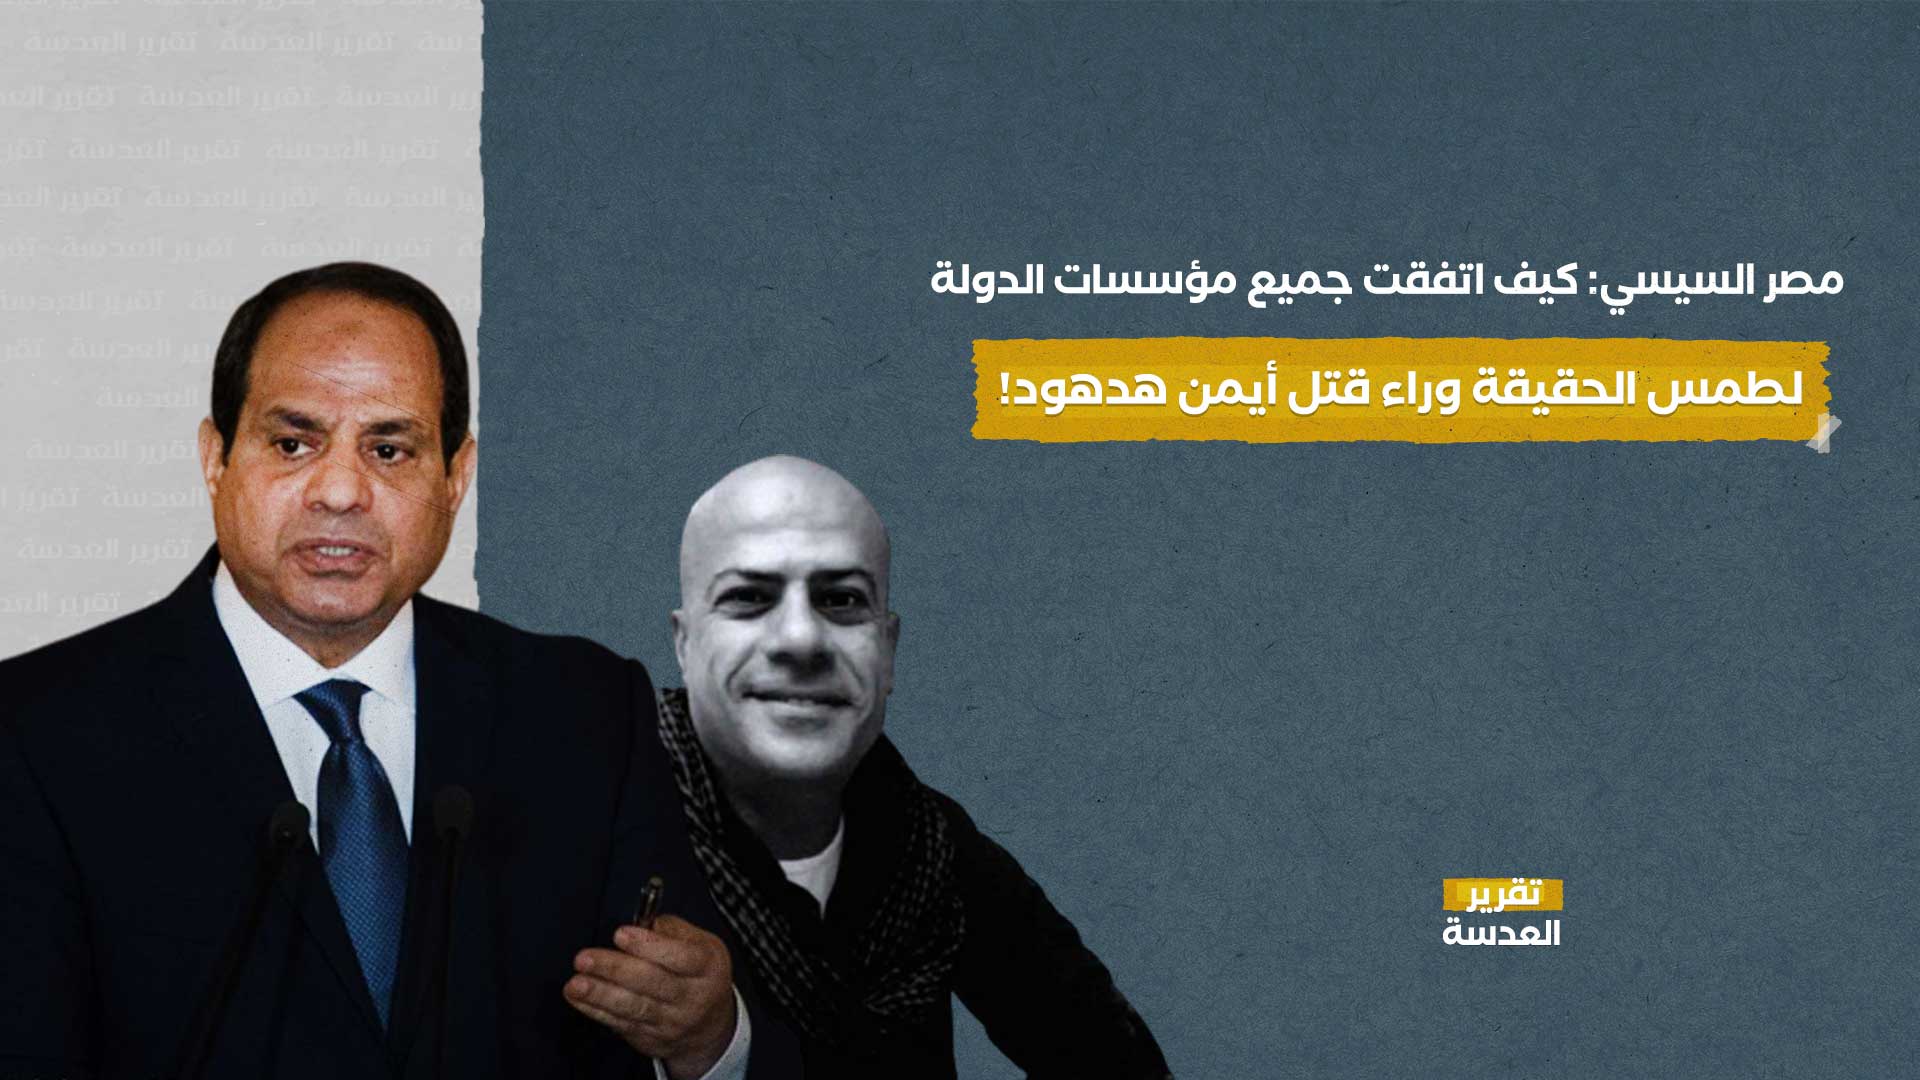 مصر السيسي: كيف اتفقت جميع مؤسسات الدولة لطمس الحقيقة وراء قتل أيمن هدهود!